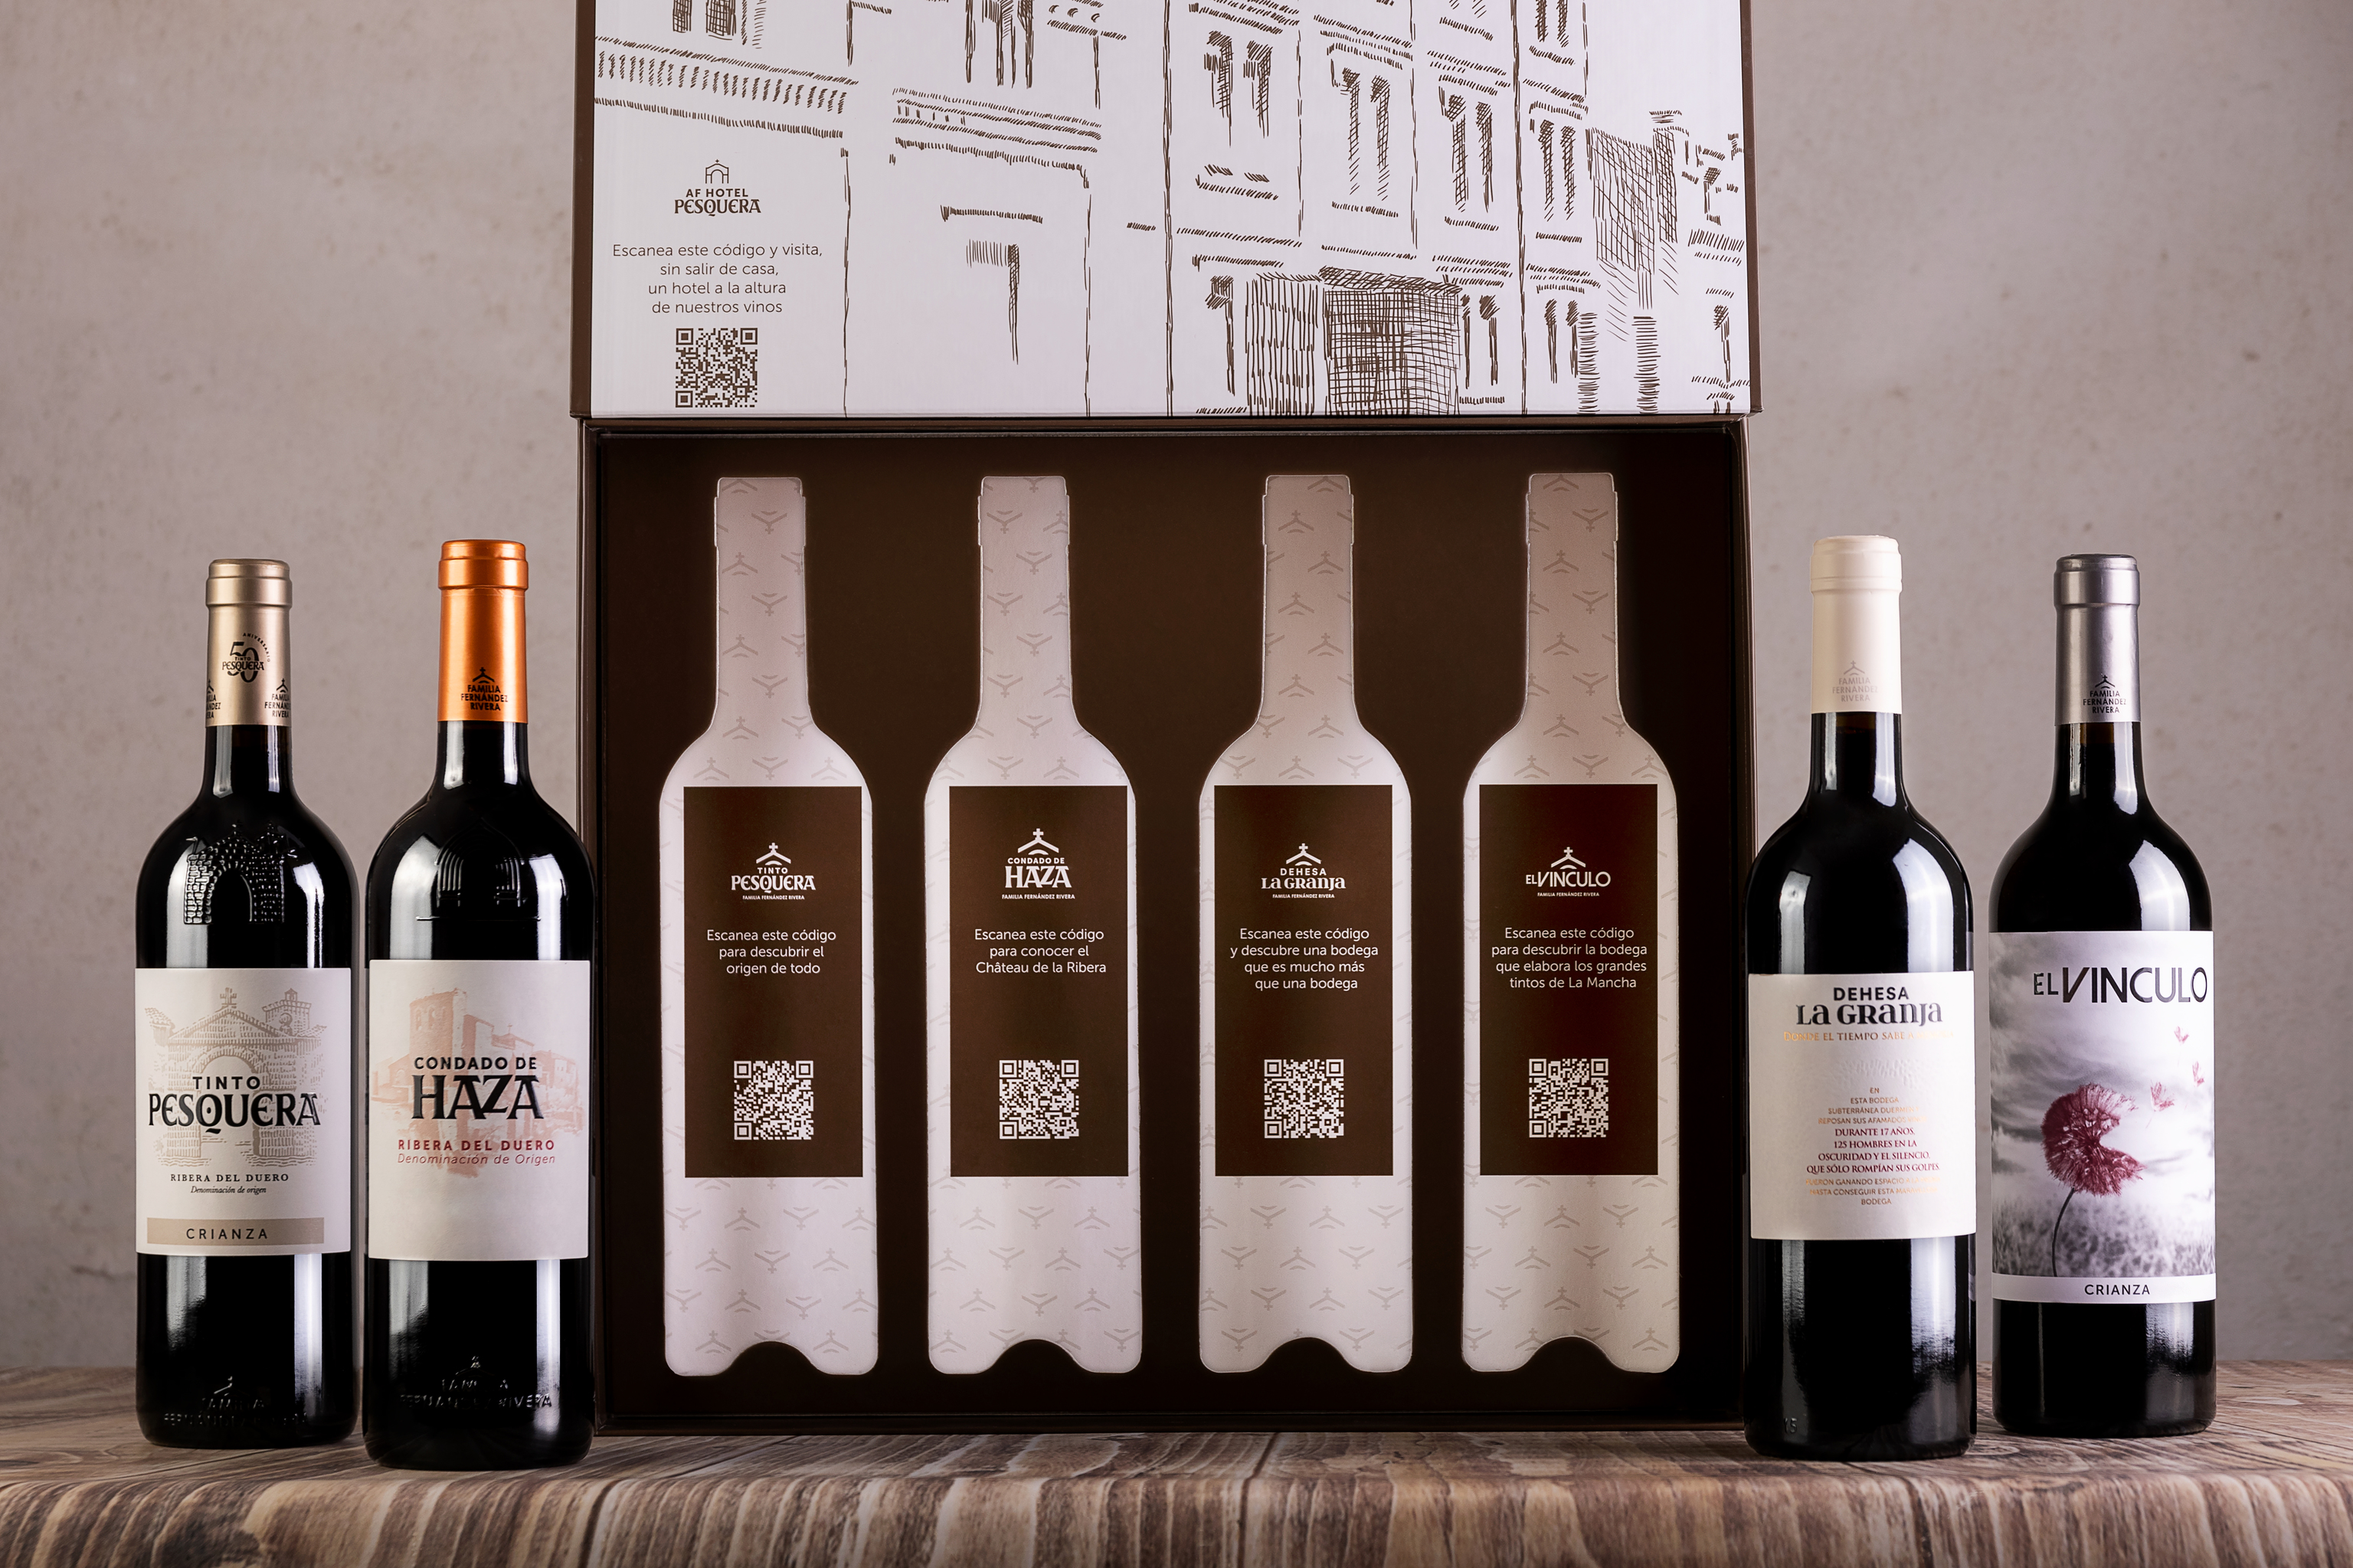 Pack 50 aniversario de Bodegas Tinto Pesquera con los cuatro mejores vinos de cada bodega del grupo.